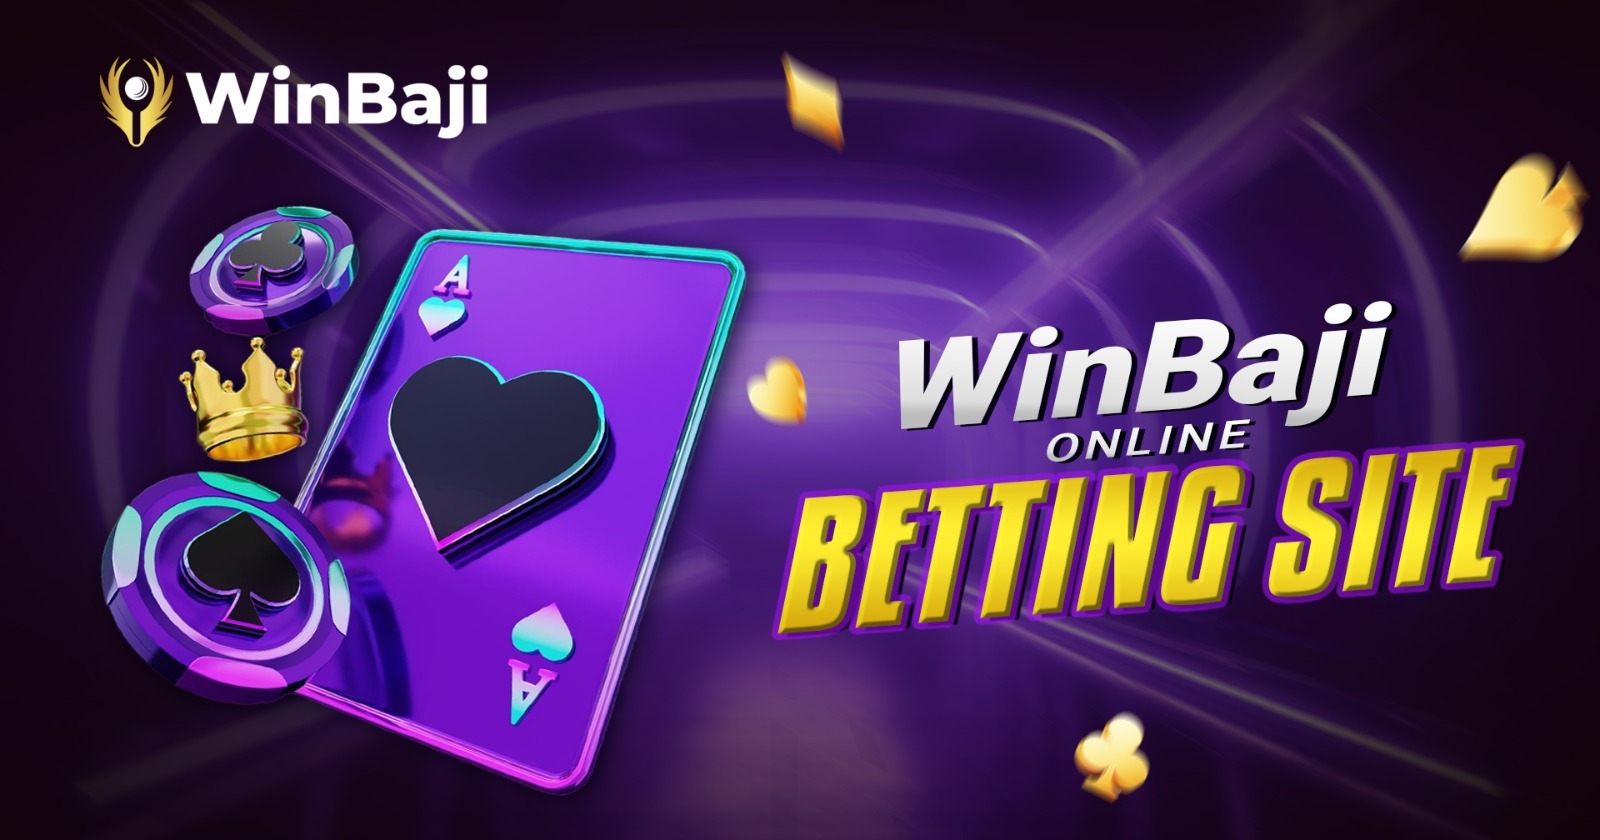 WinBaji Club – Online Betting Site